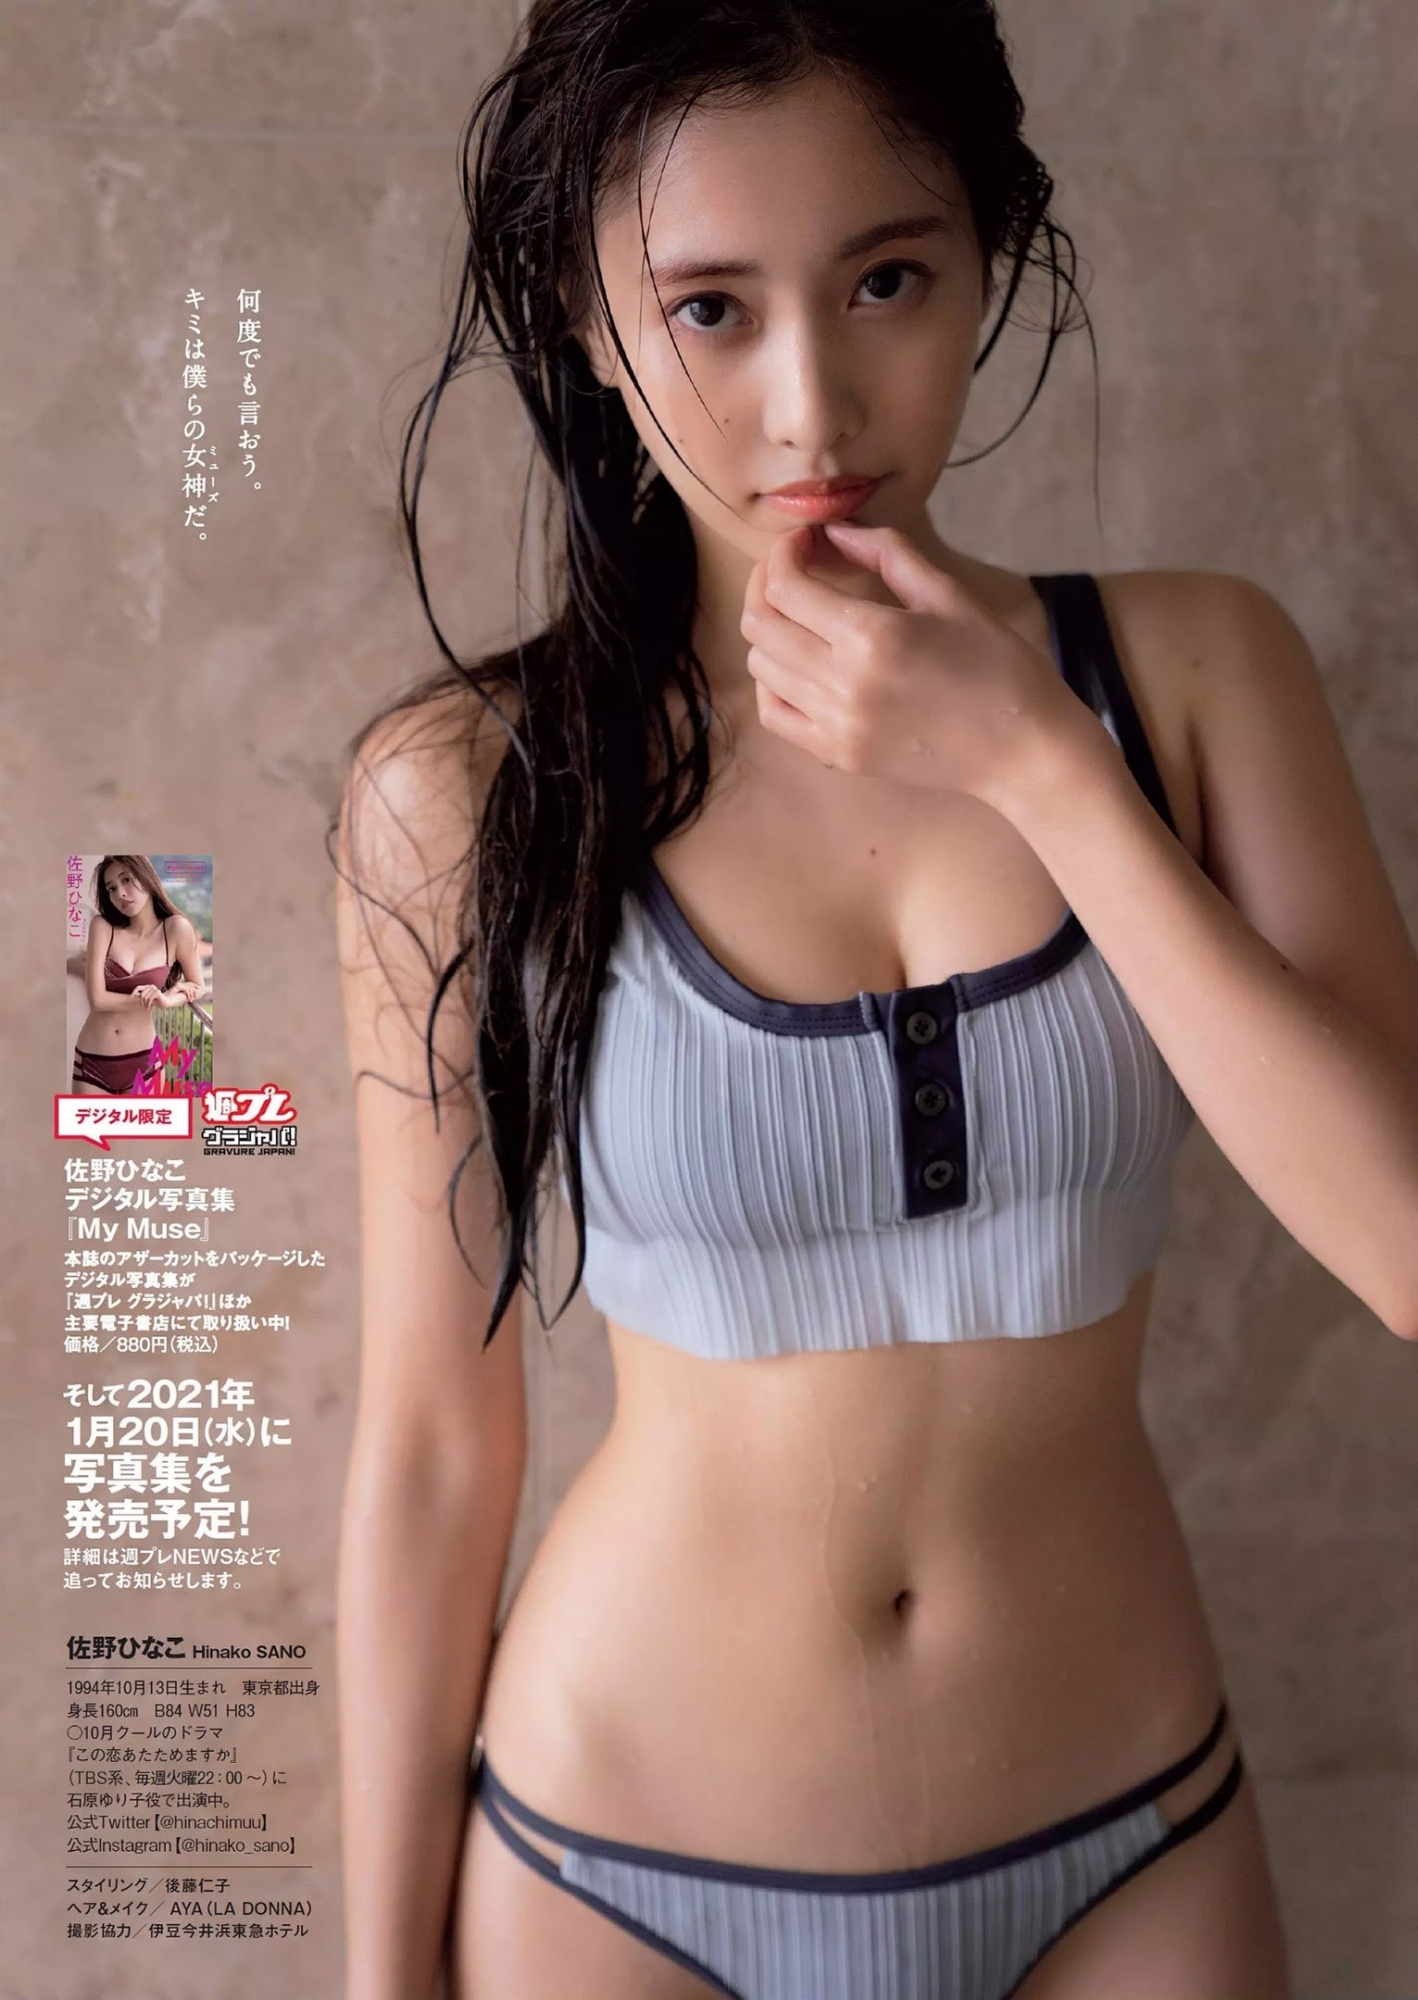 可甜也可辣！写真女星「佐野雏子」放「F 杯美、20吋纤腰」出来透透气啦！